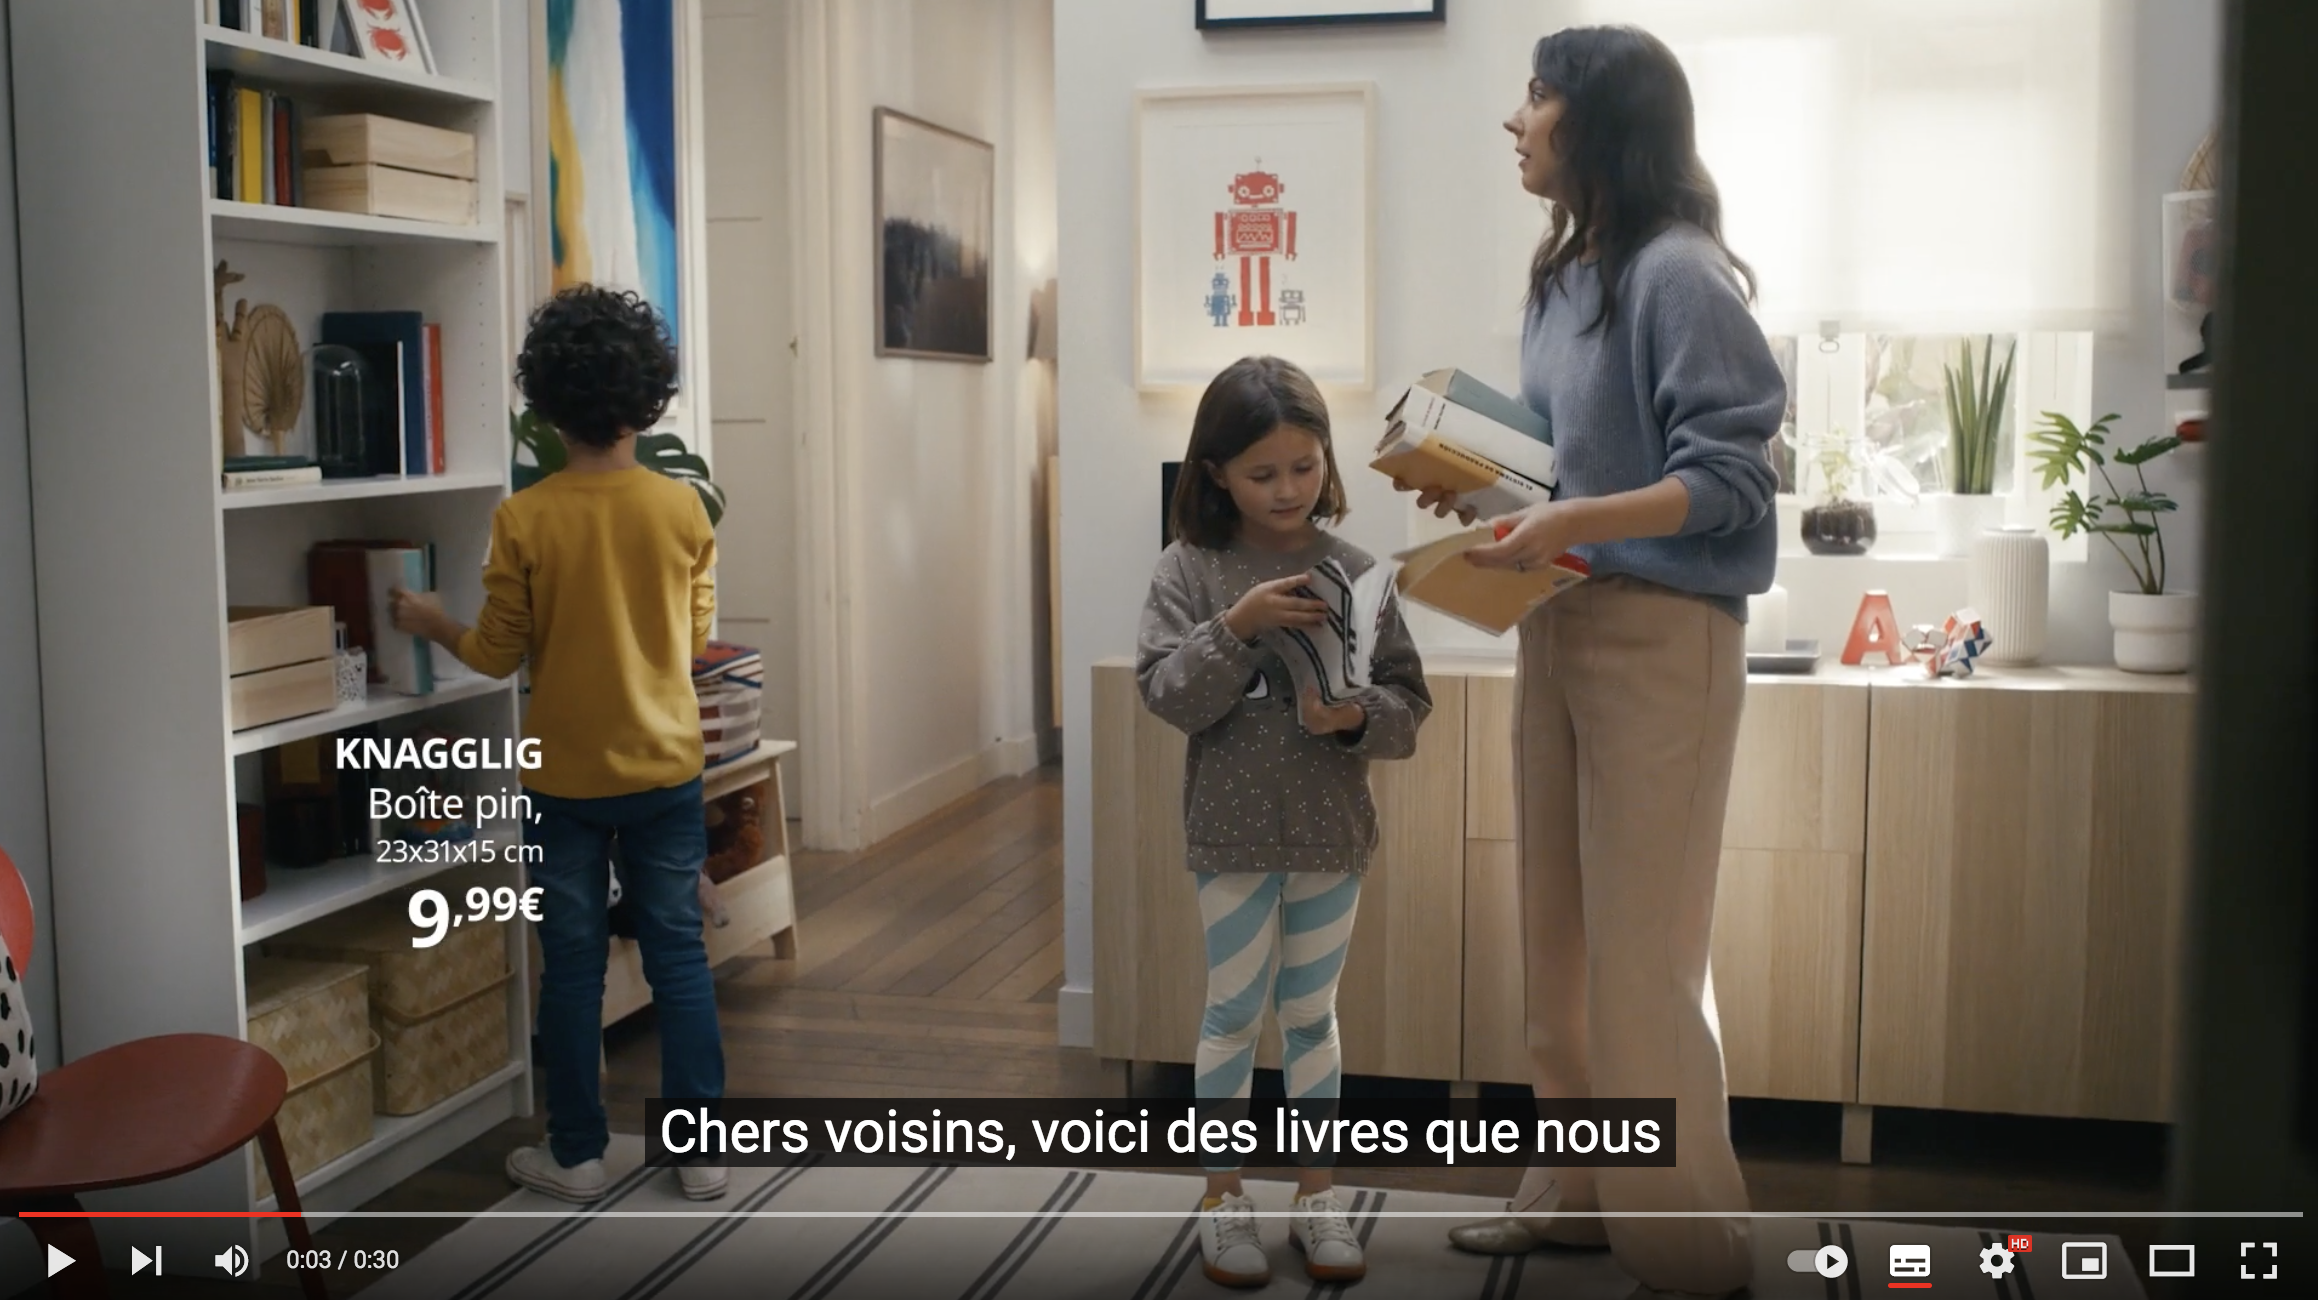 Bonne nouvelle : Ikéa remet des livres dans ses spots publicitaires (VIDÉO)